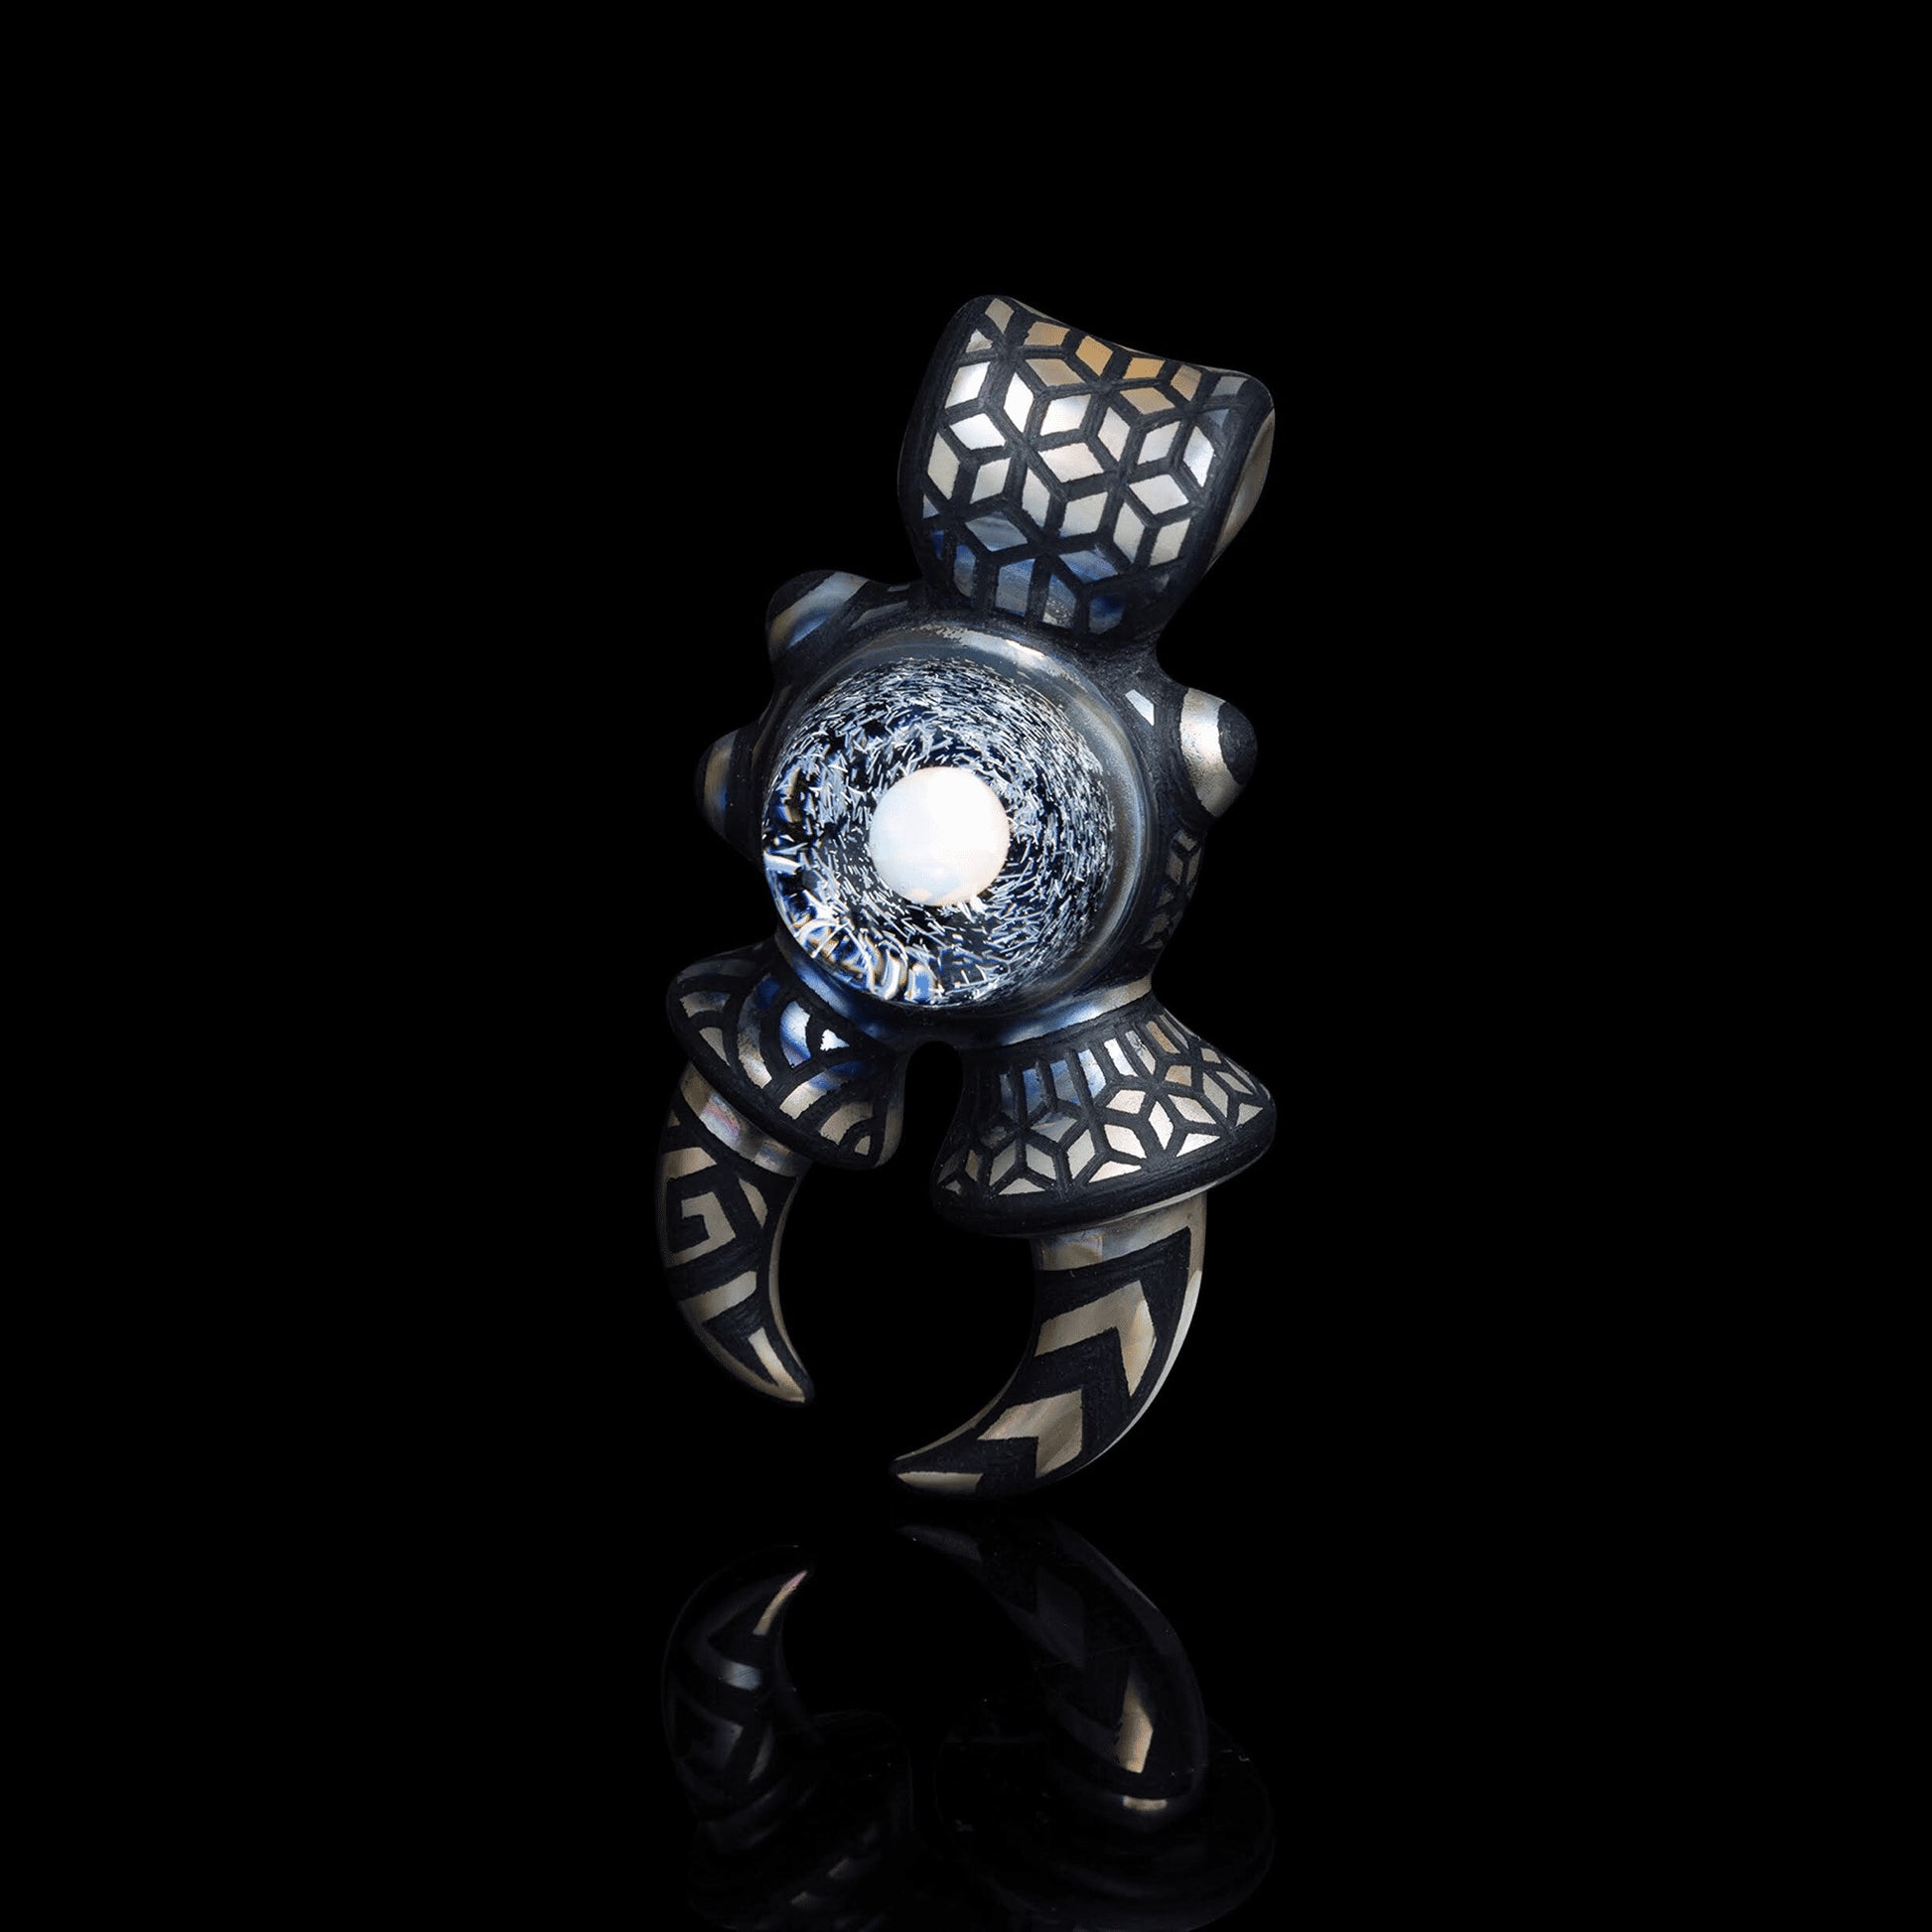 luxurious glass pendant - Full Warlock Pendant (A) by Alex Ubatuba x Artist Stylie (2BA x Stylie 2022 Release)